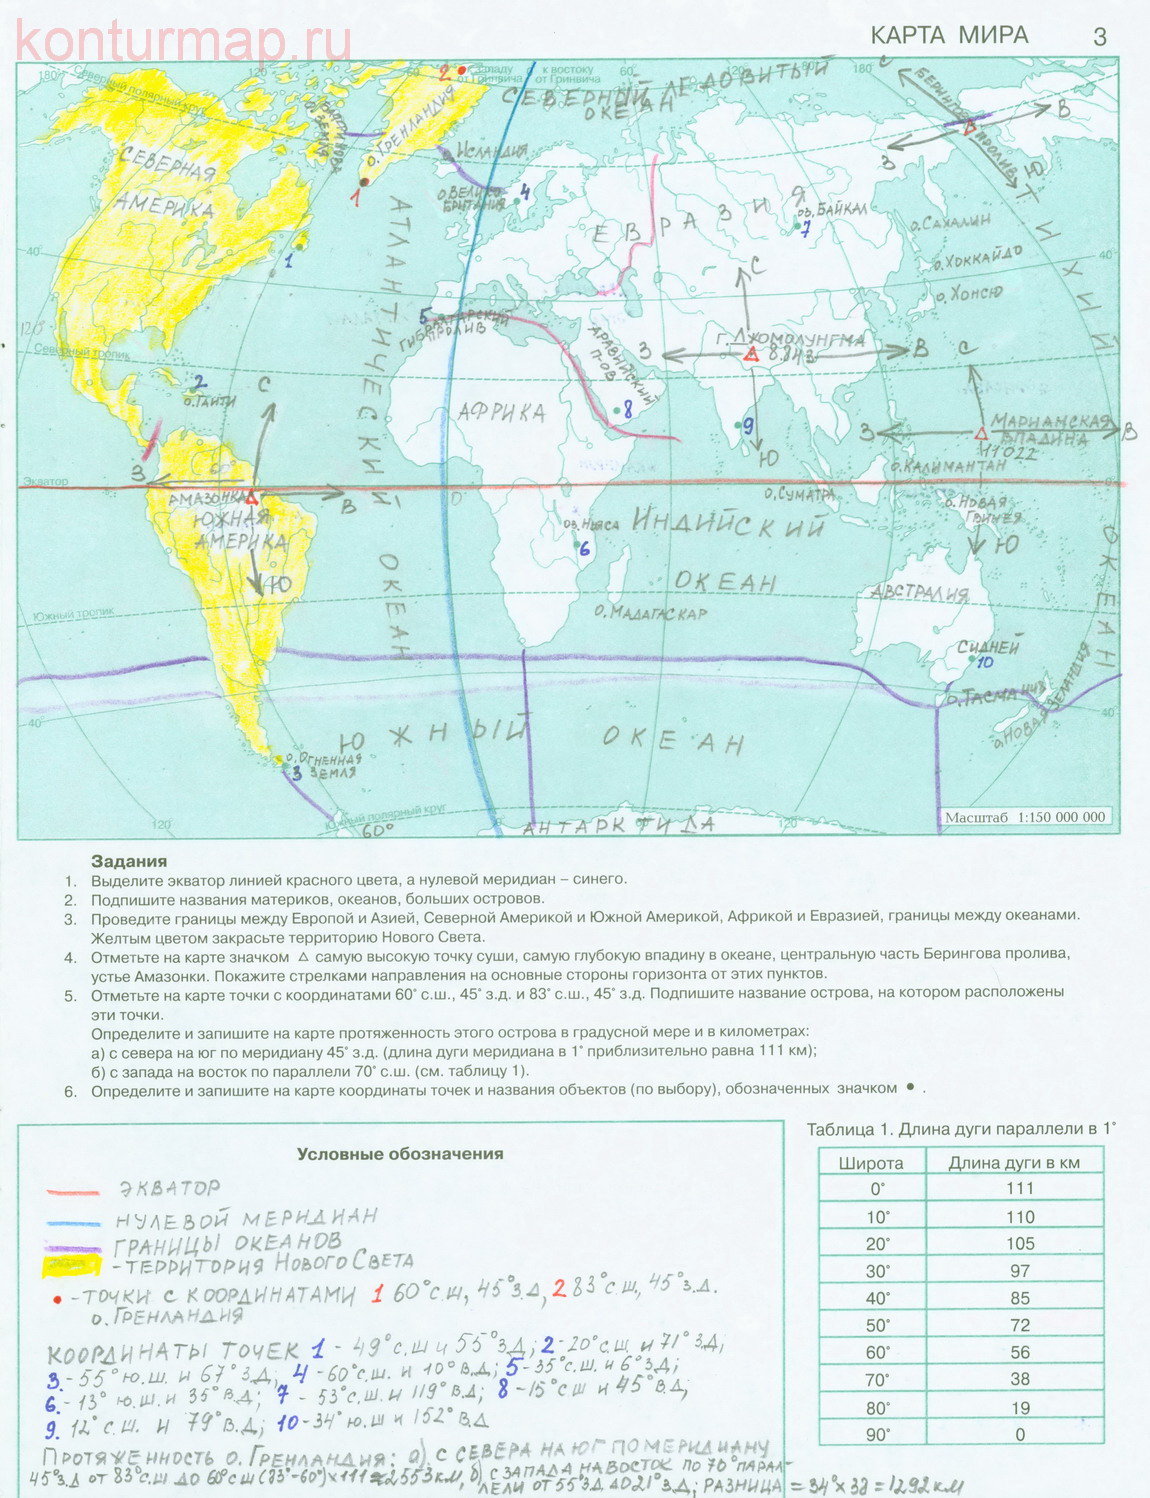 Подпишите крайние точки евразии и их географические координаты контурная карта 7 класс гдз география